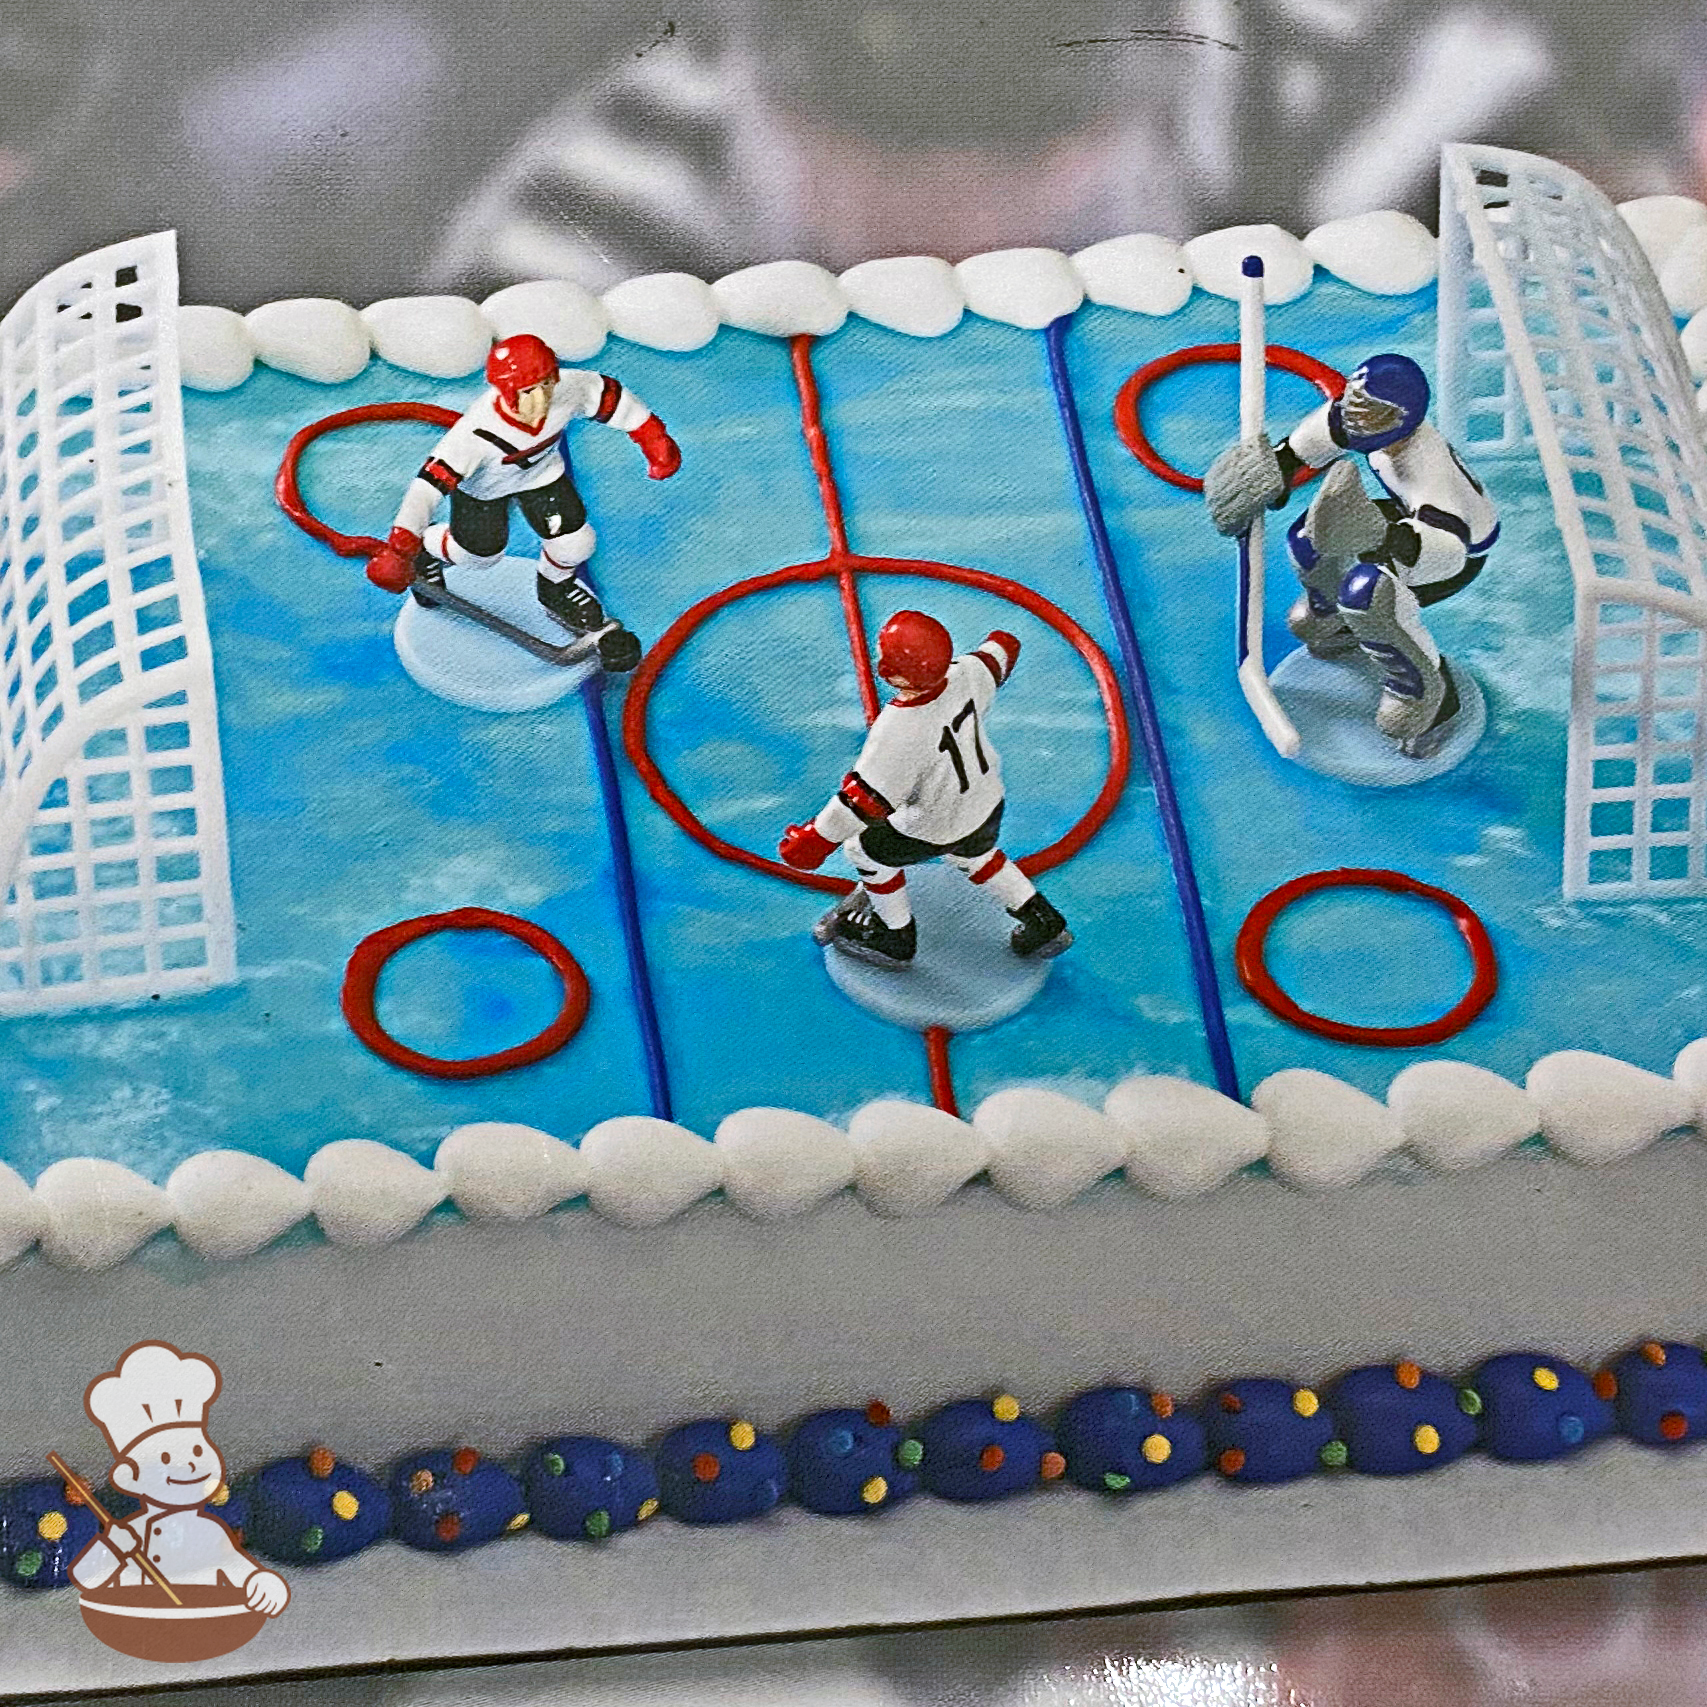 Hockey Puck Cake 